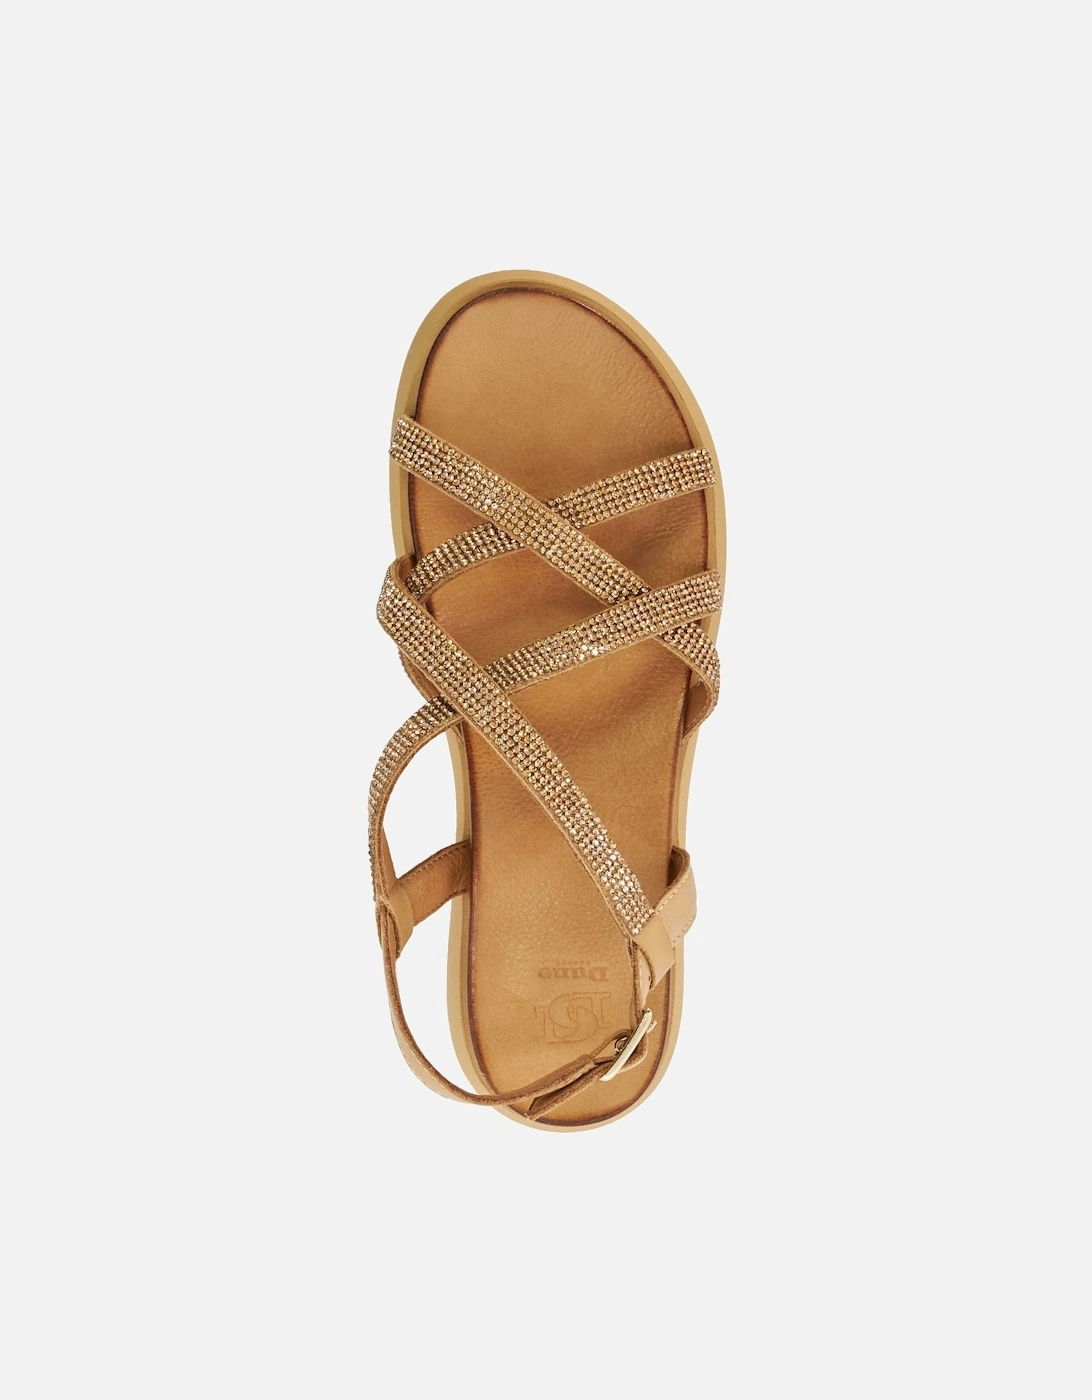 Ladies Ledge - Chunky Embellished Sandals